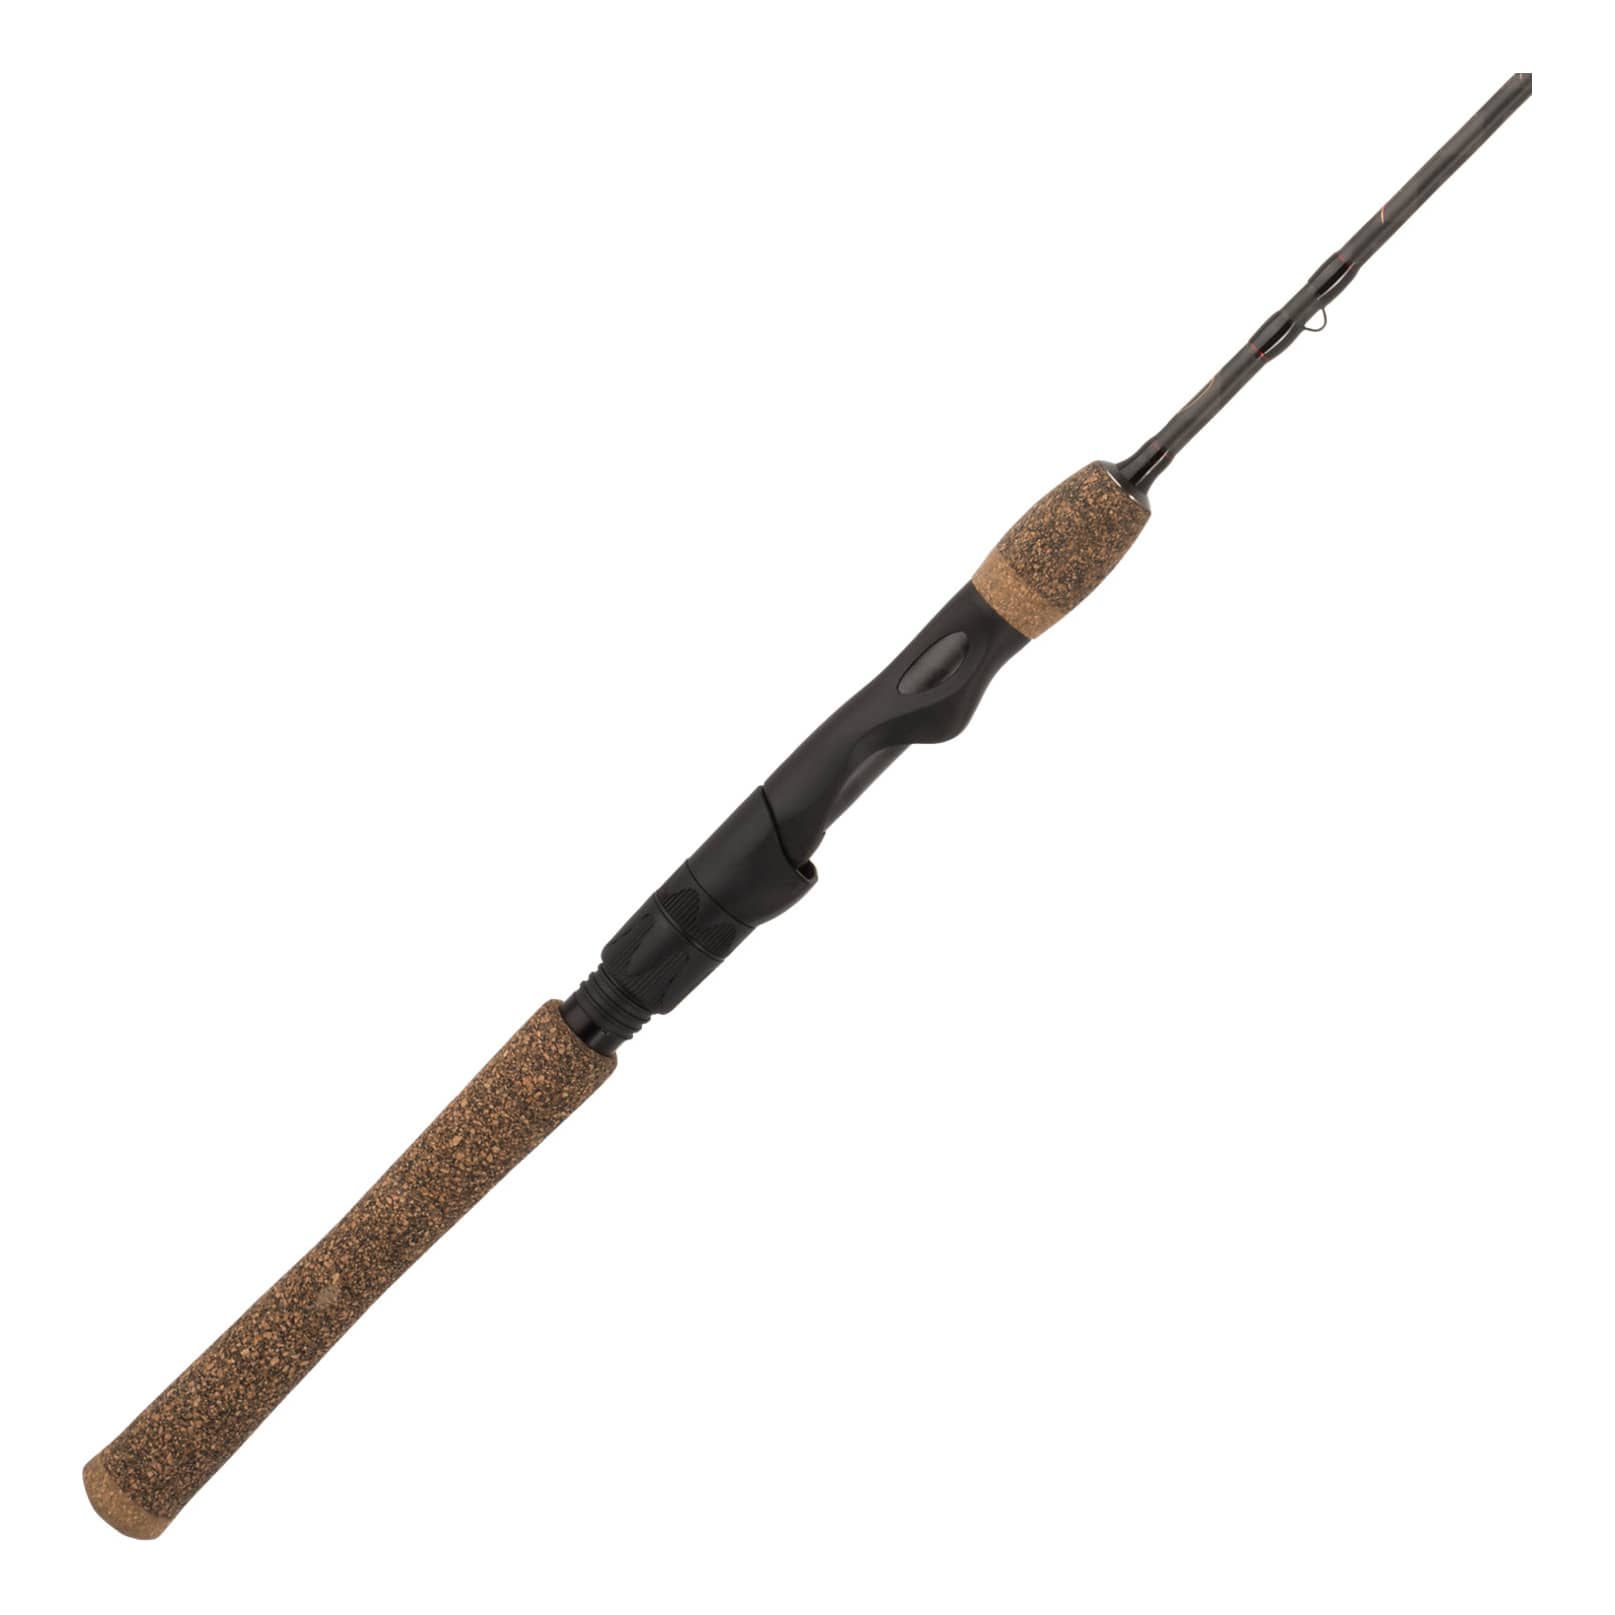 Big Catch Fishing Tackle - Shimano FX XT Rod